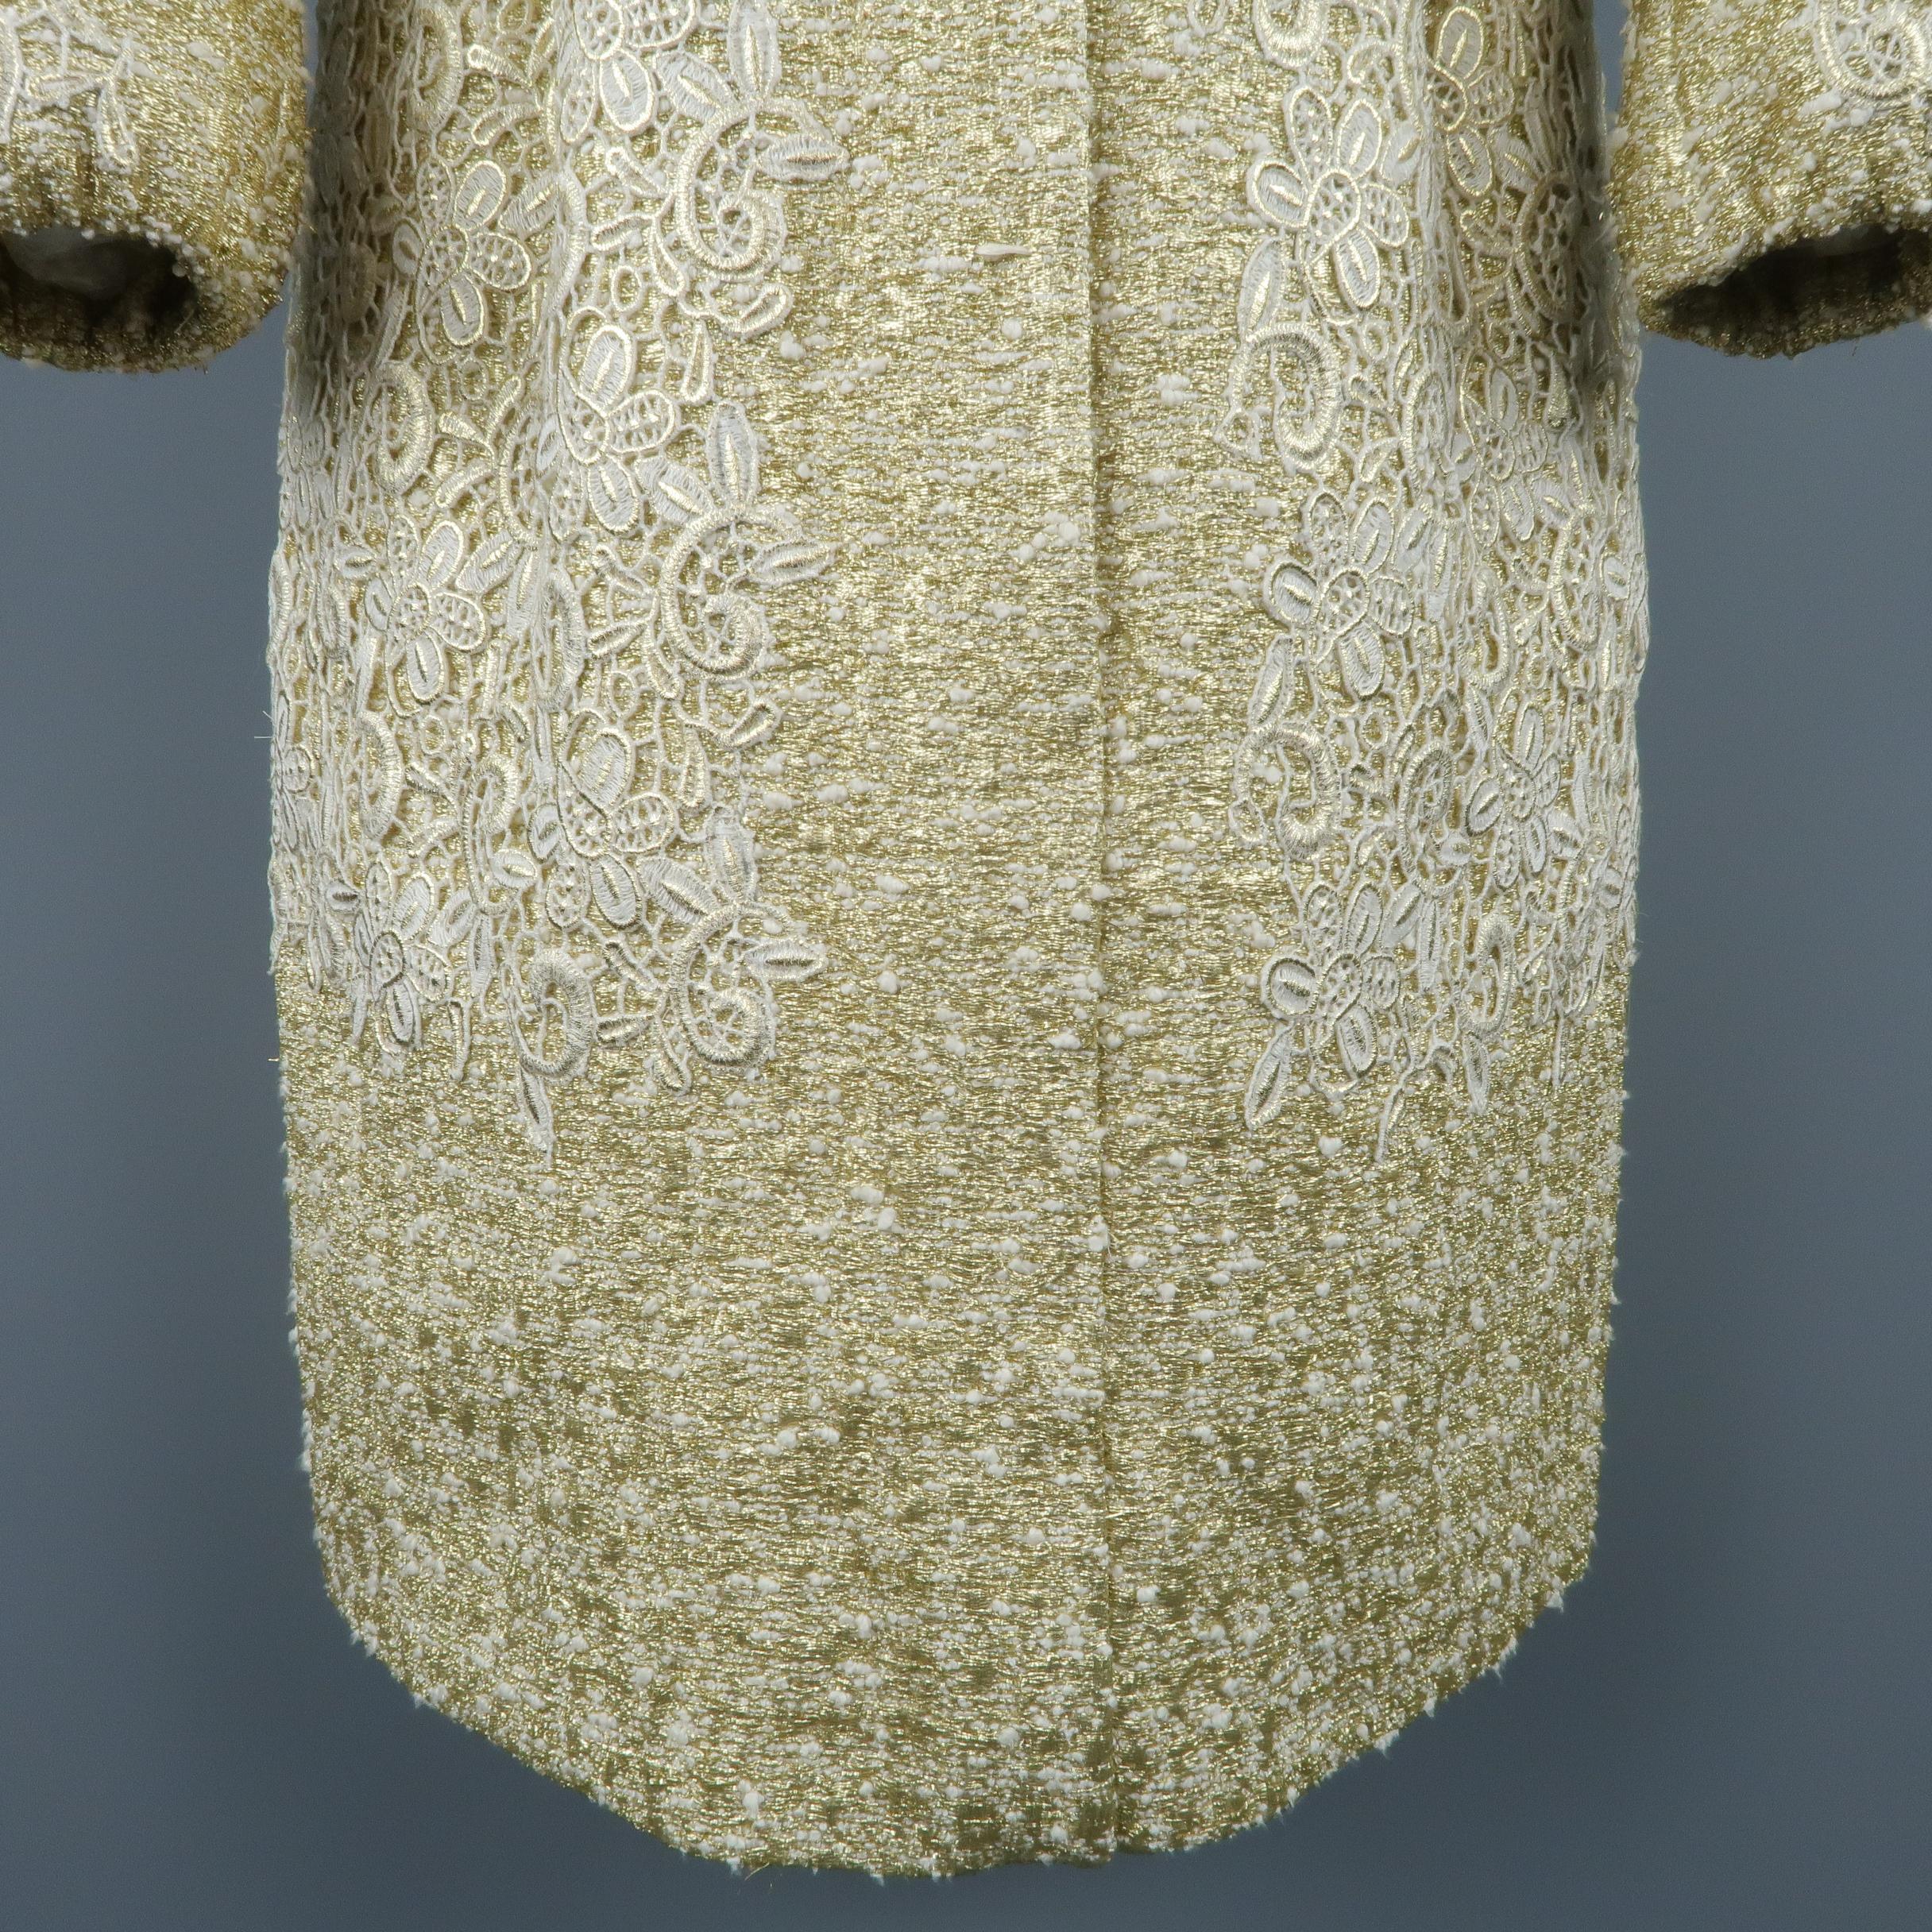 GIAMBATTISTA VALLI Metallic Gold Cotton / Silk Lace Overlay Cocktail Coat-Dress 1